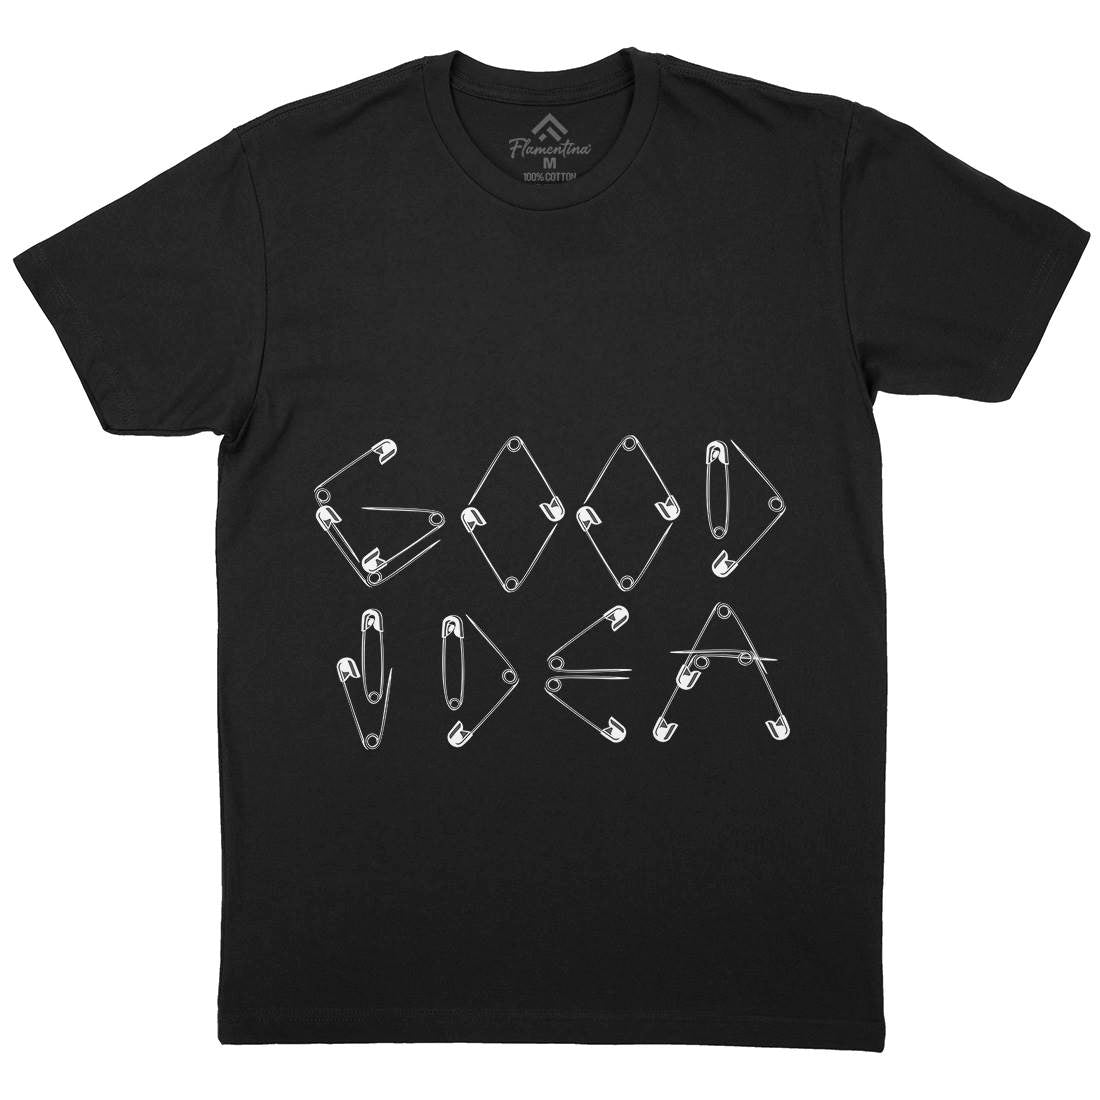 Good Idea Mens Crew Neck T-Shirt Retro B044